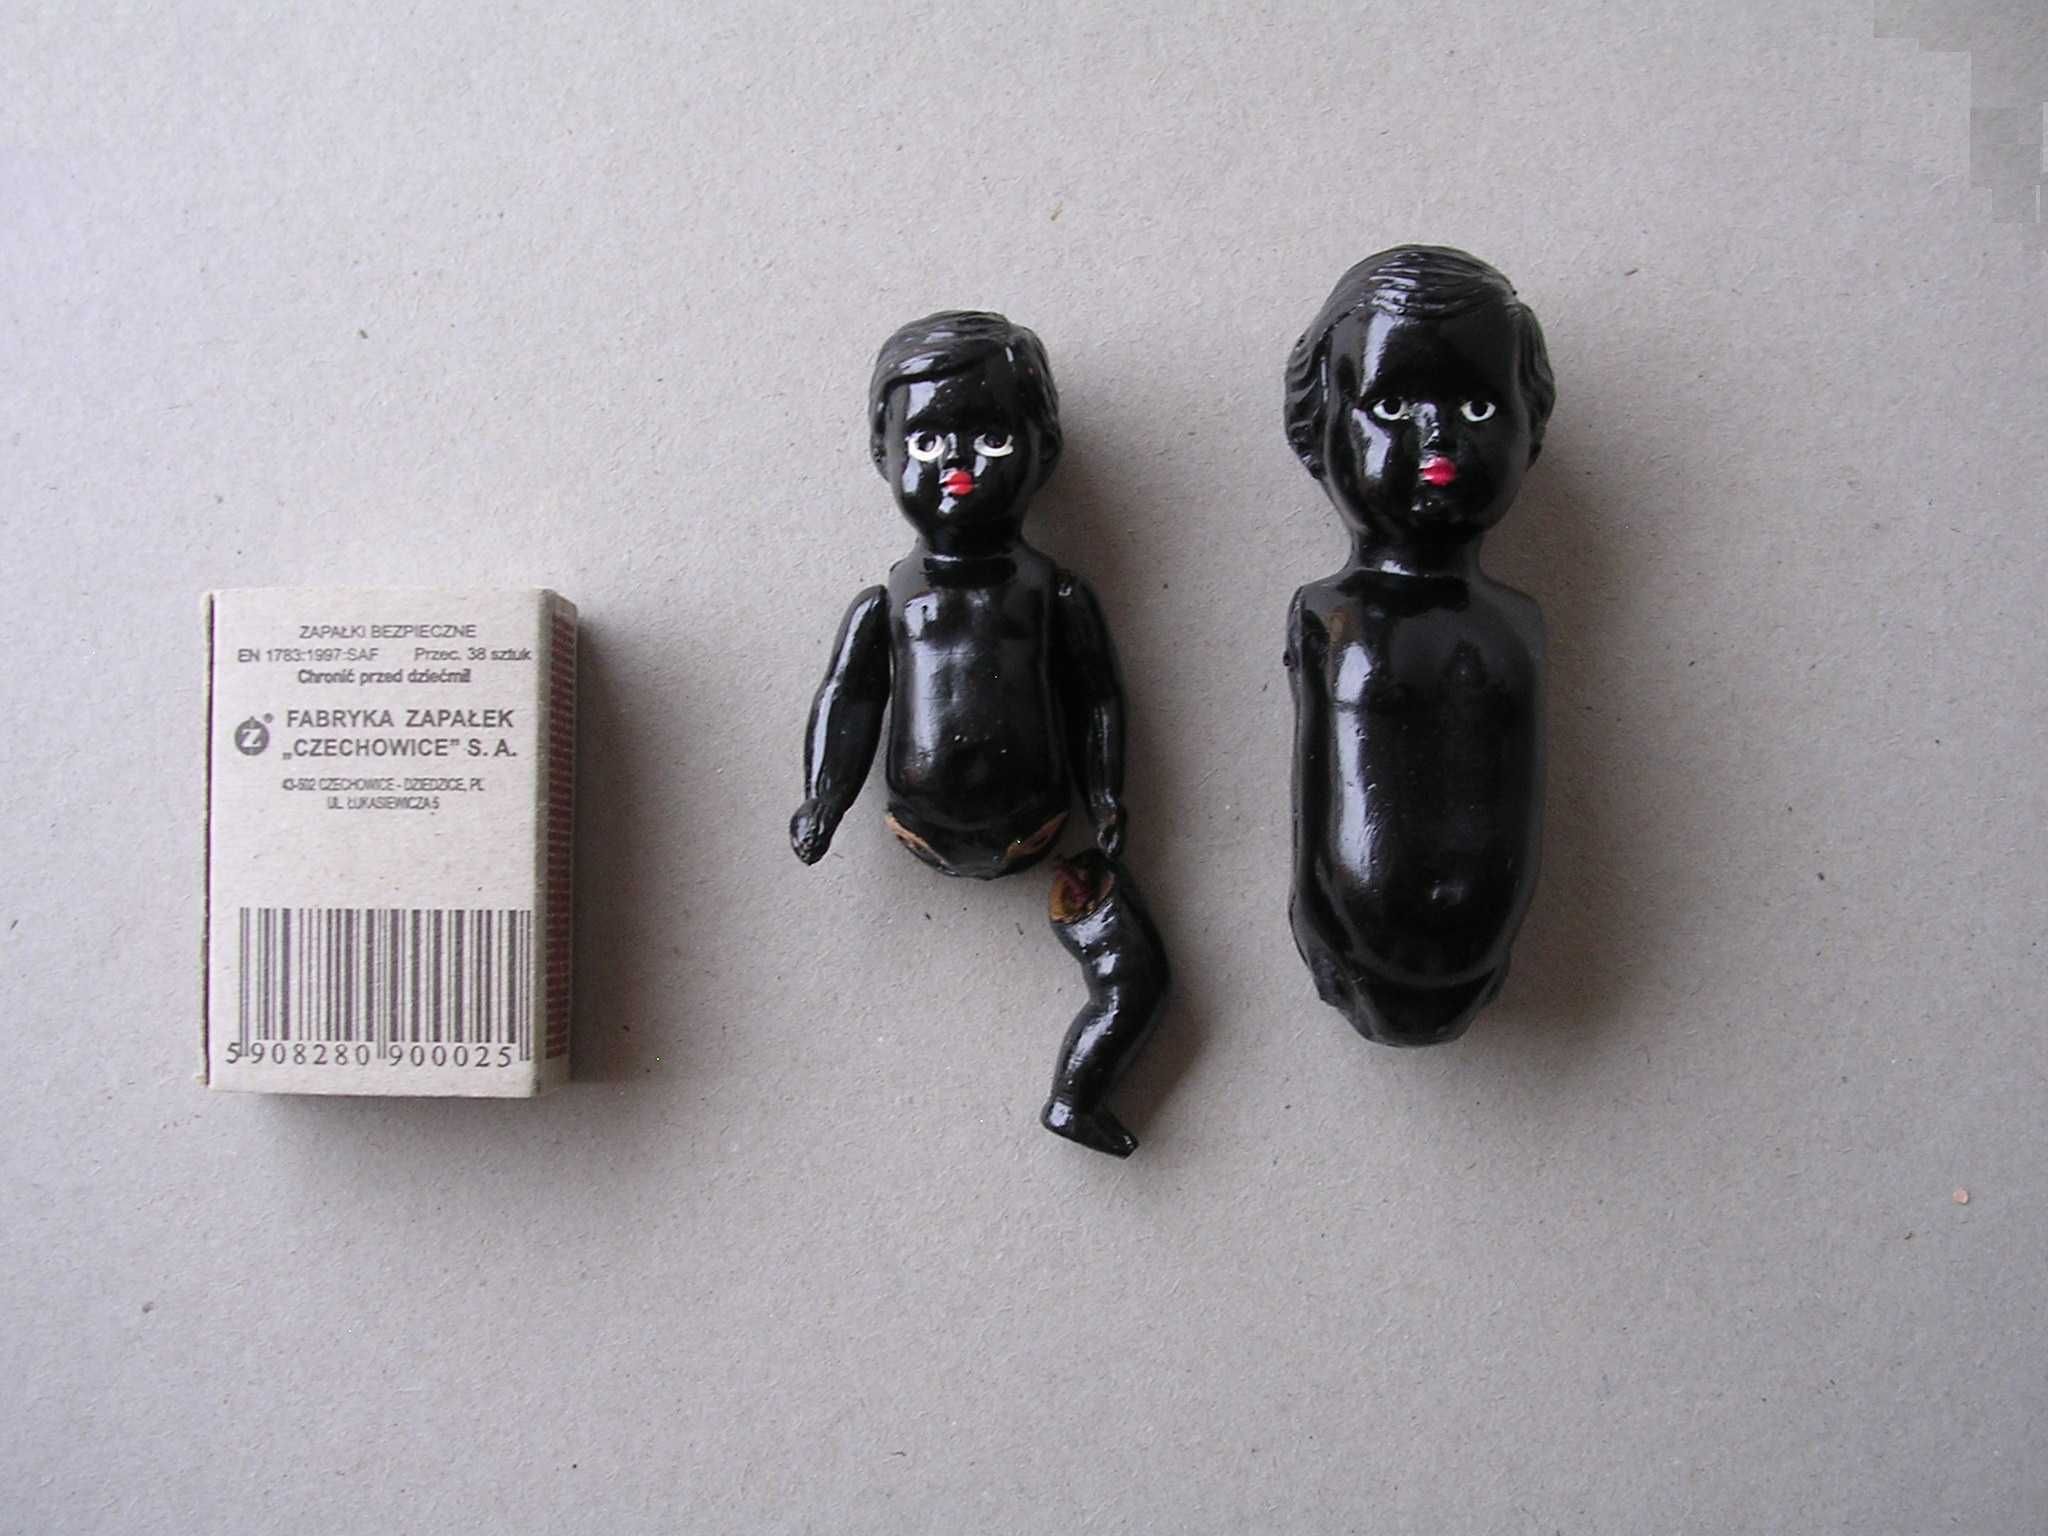 Stara zabawka z prl u figurka lalka murzynek celuloid stare zabawki